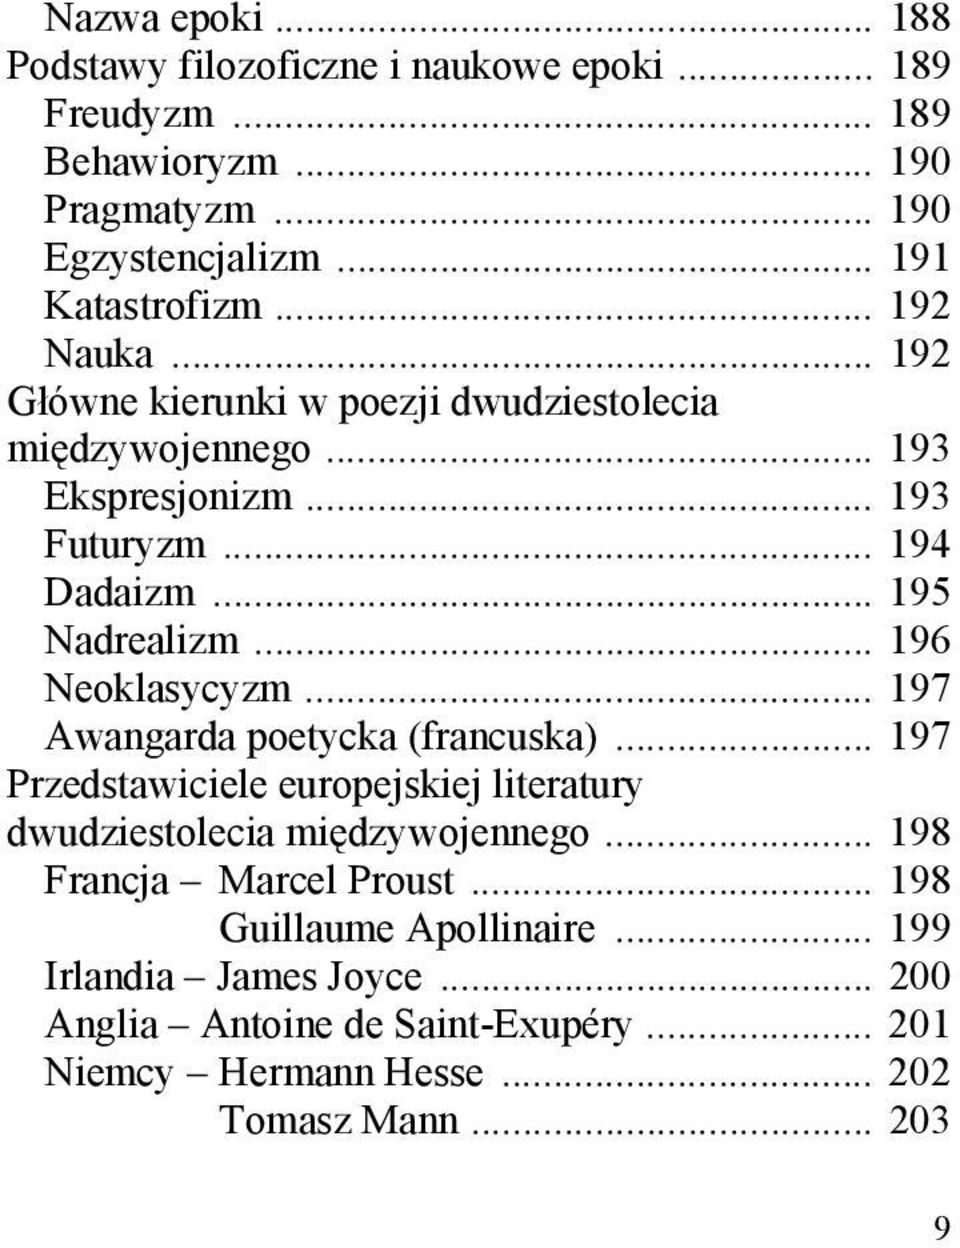 .. 196 Neoklasycyzm... 197 Awangarda poetycka (francuska)... 197 Przedstawiciele europejskiej literatury dwudziestolecia międzywojennego.